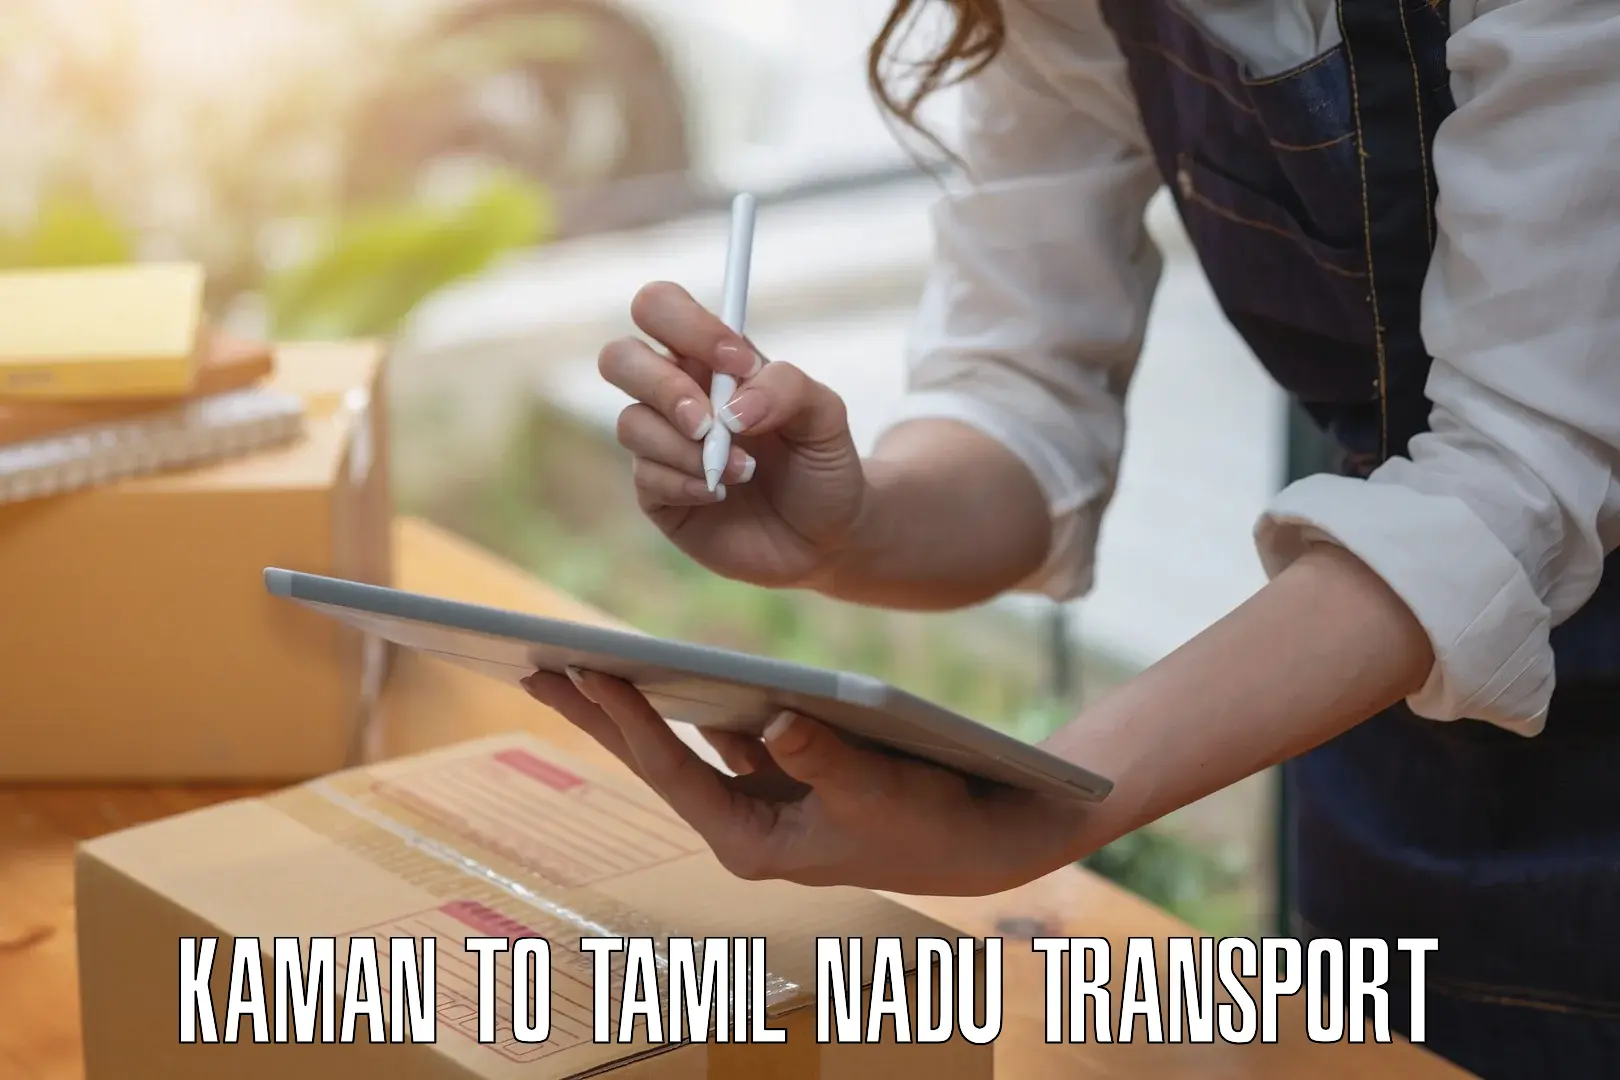 Daily transport service Kaman to Maharajapuram